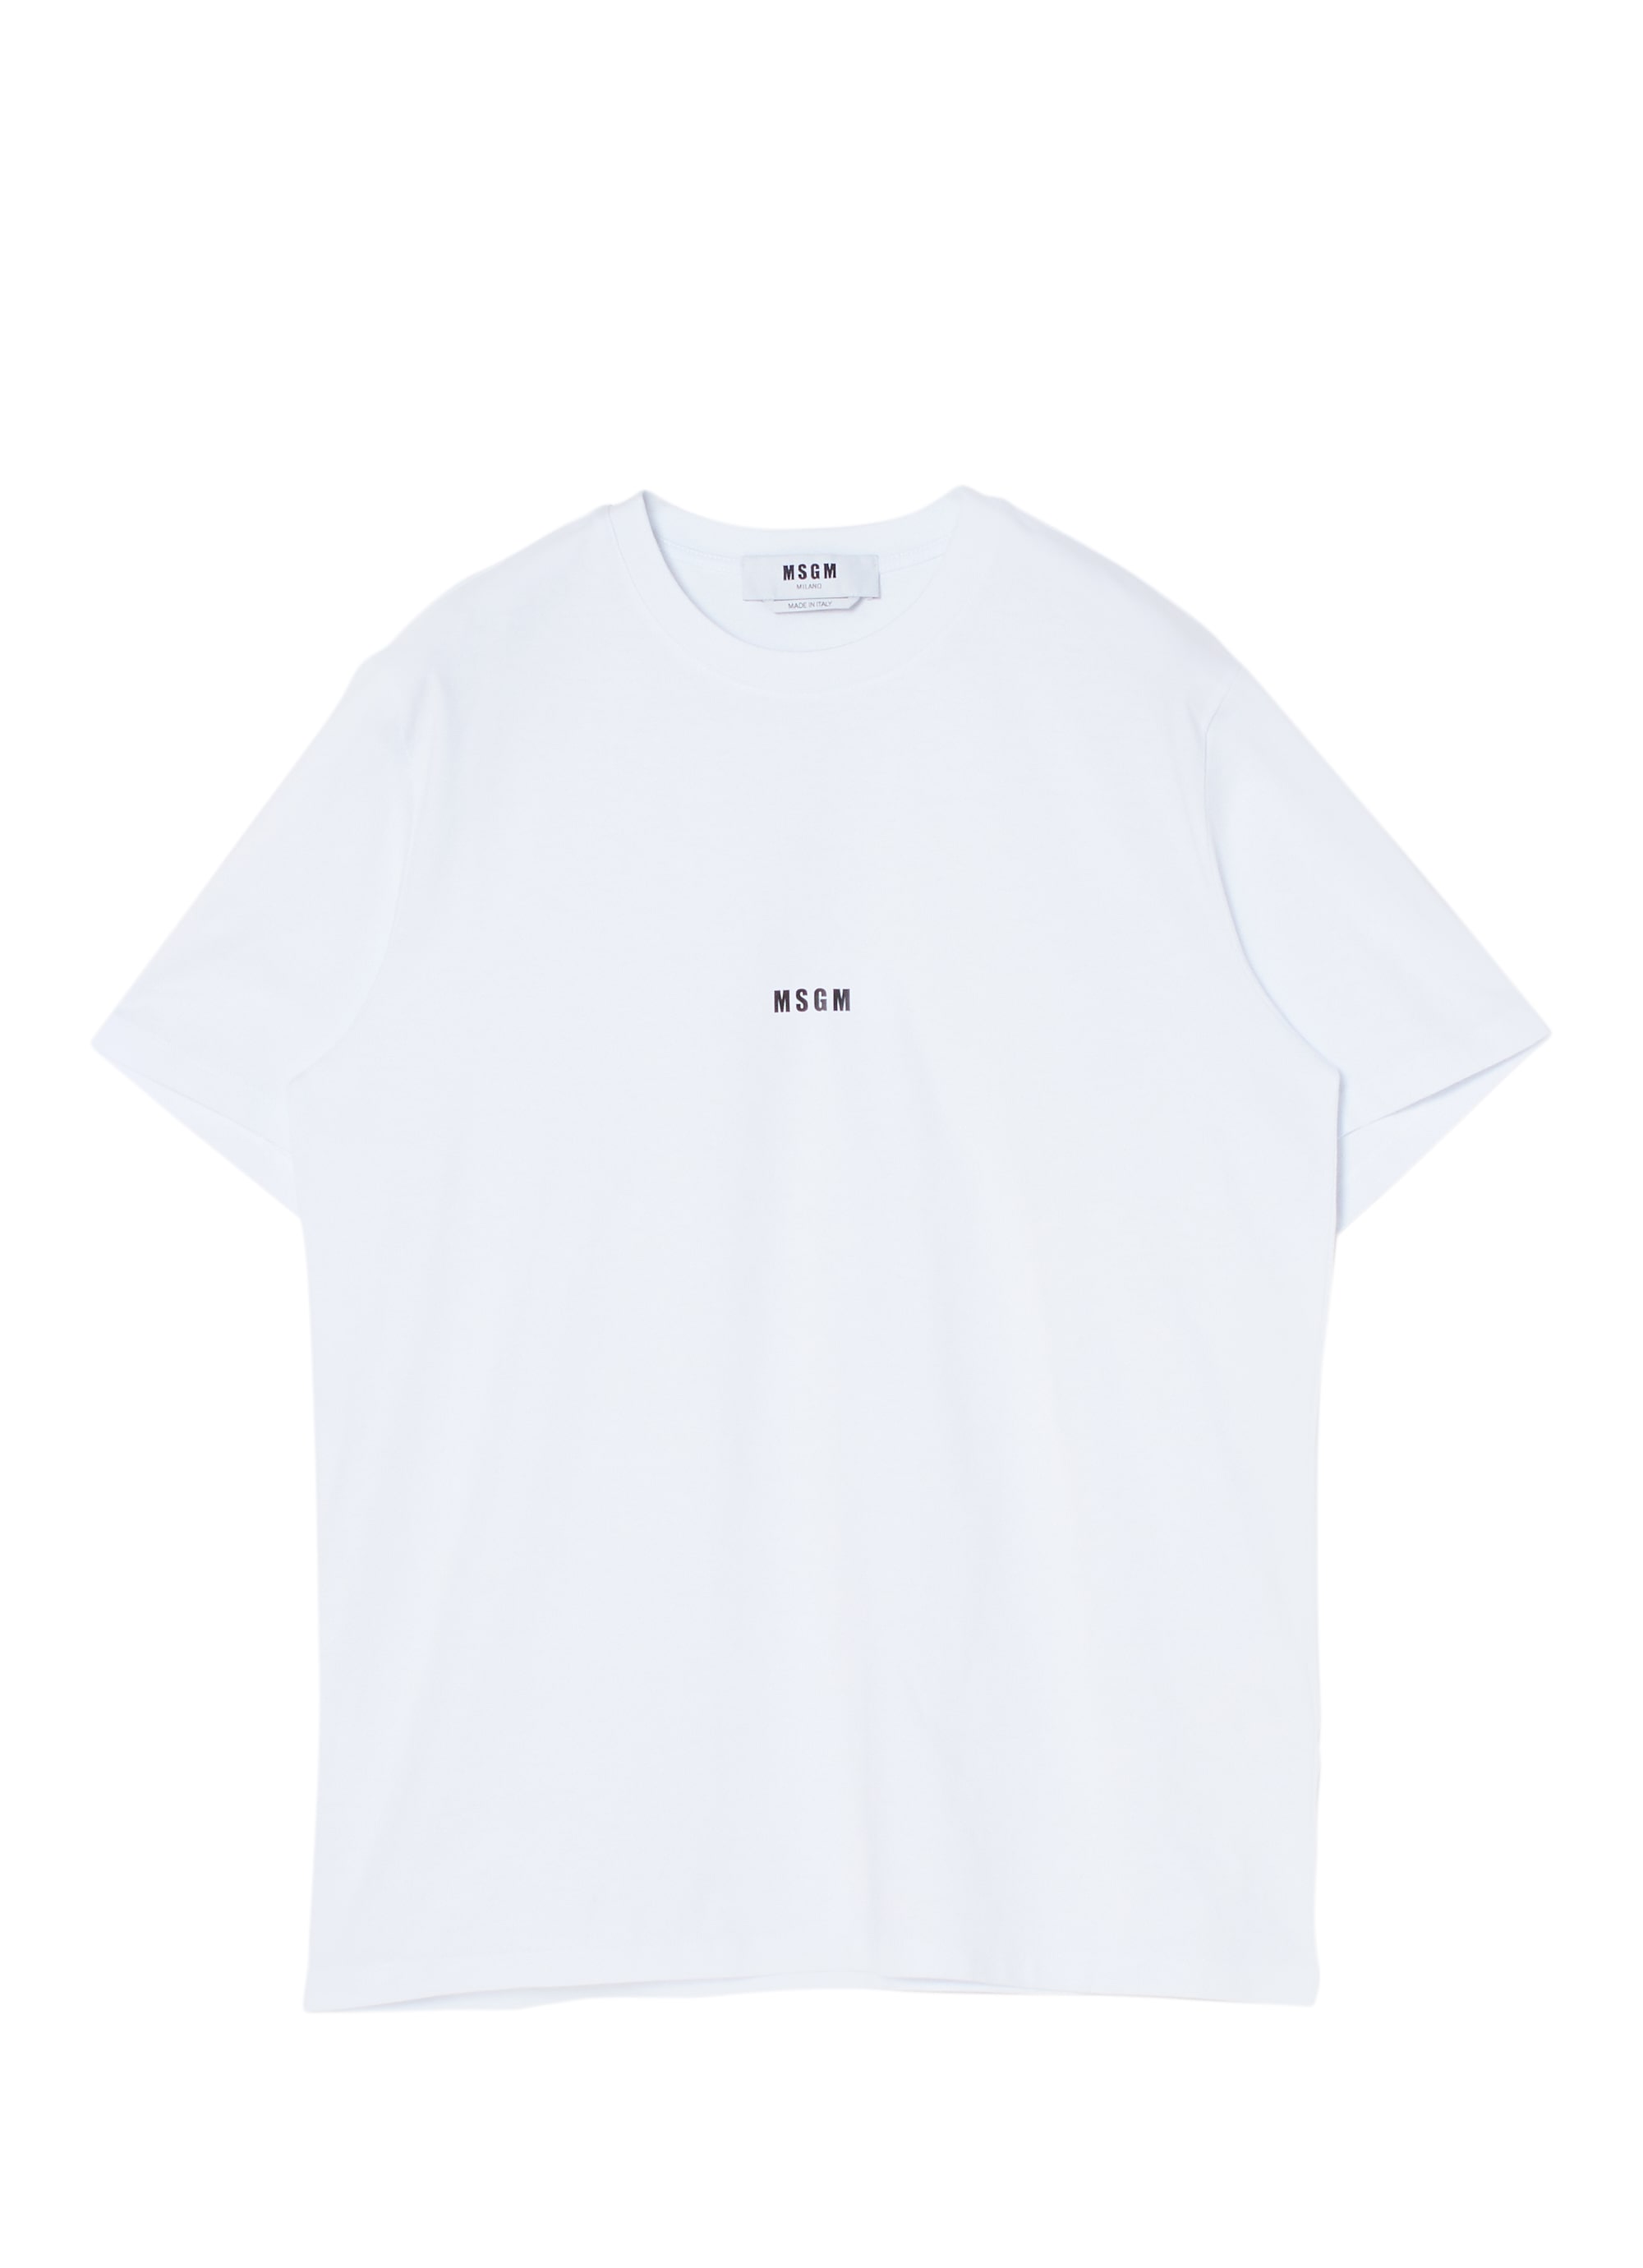 メンズ Tシャツ 詳細画像 ホワイト 1